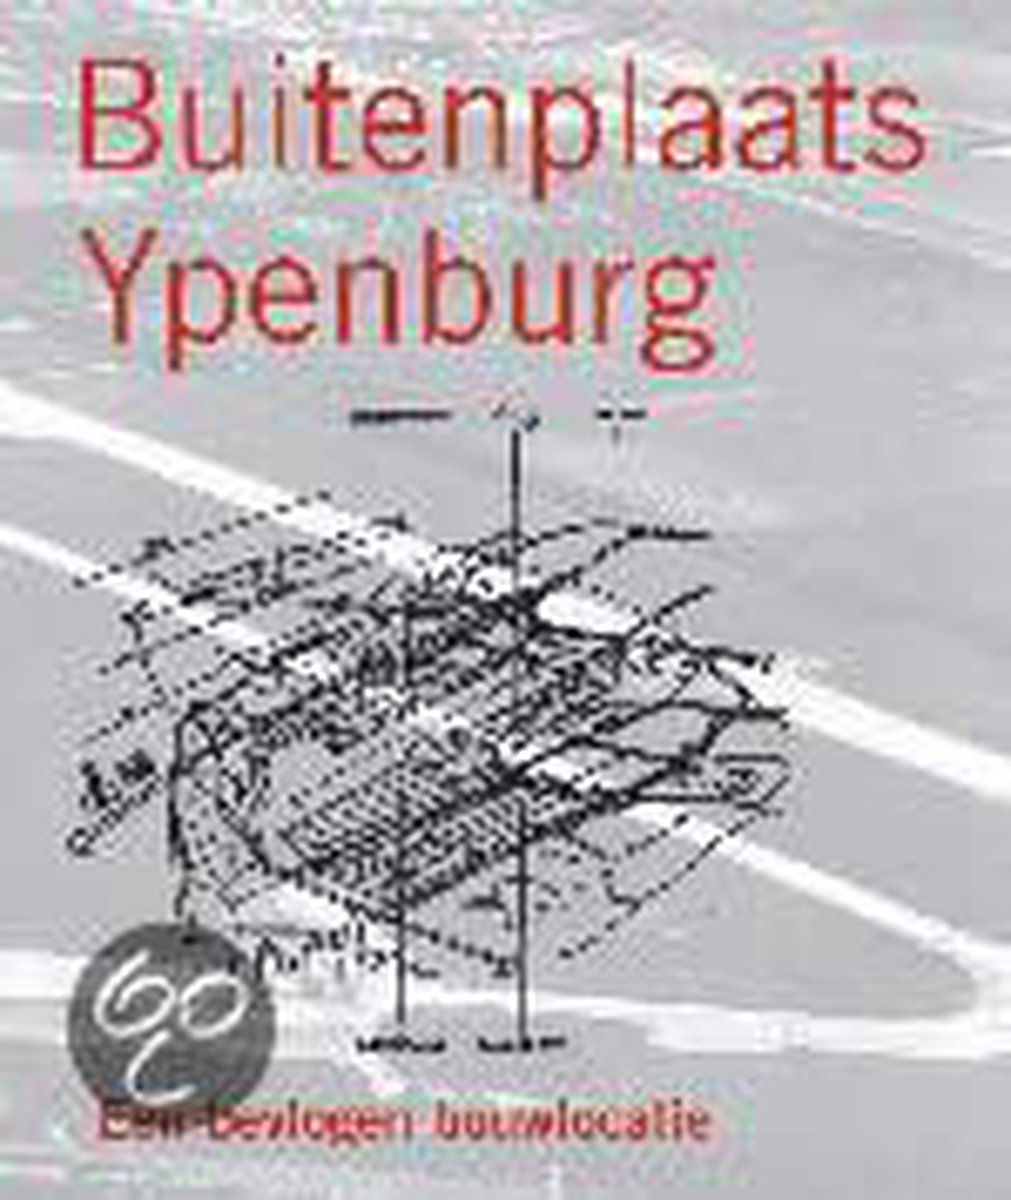 Buitenplaats ypenburg een bevlogen bouwlocatie